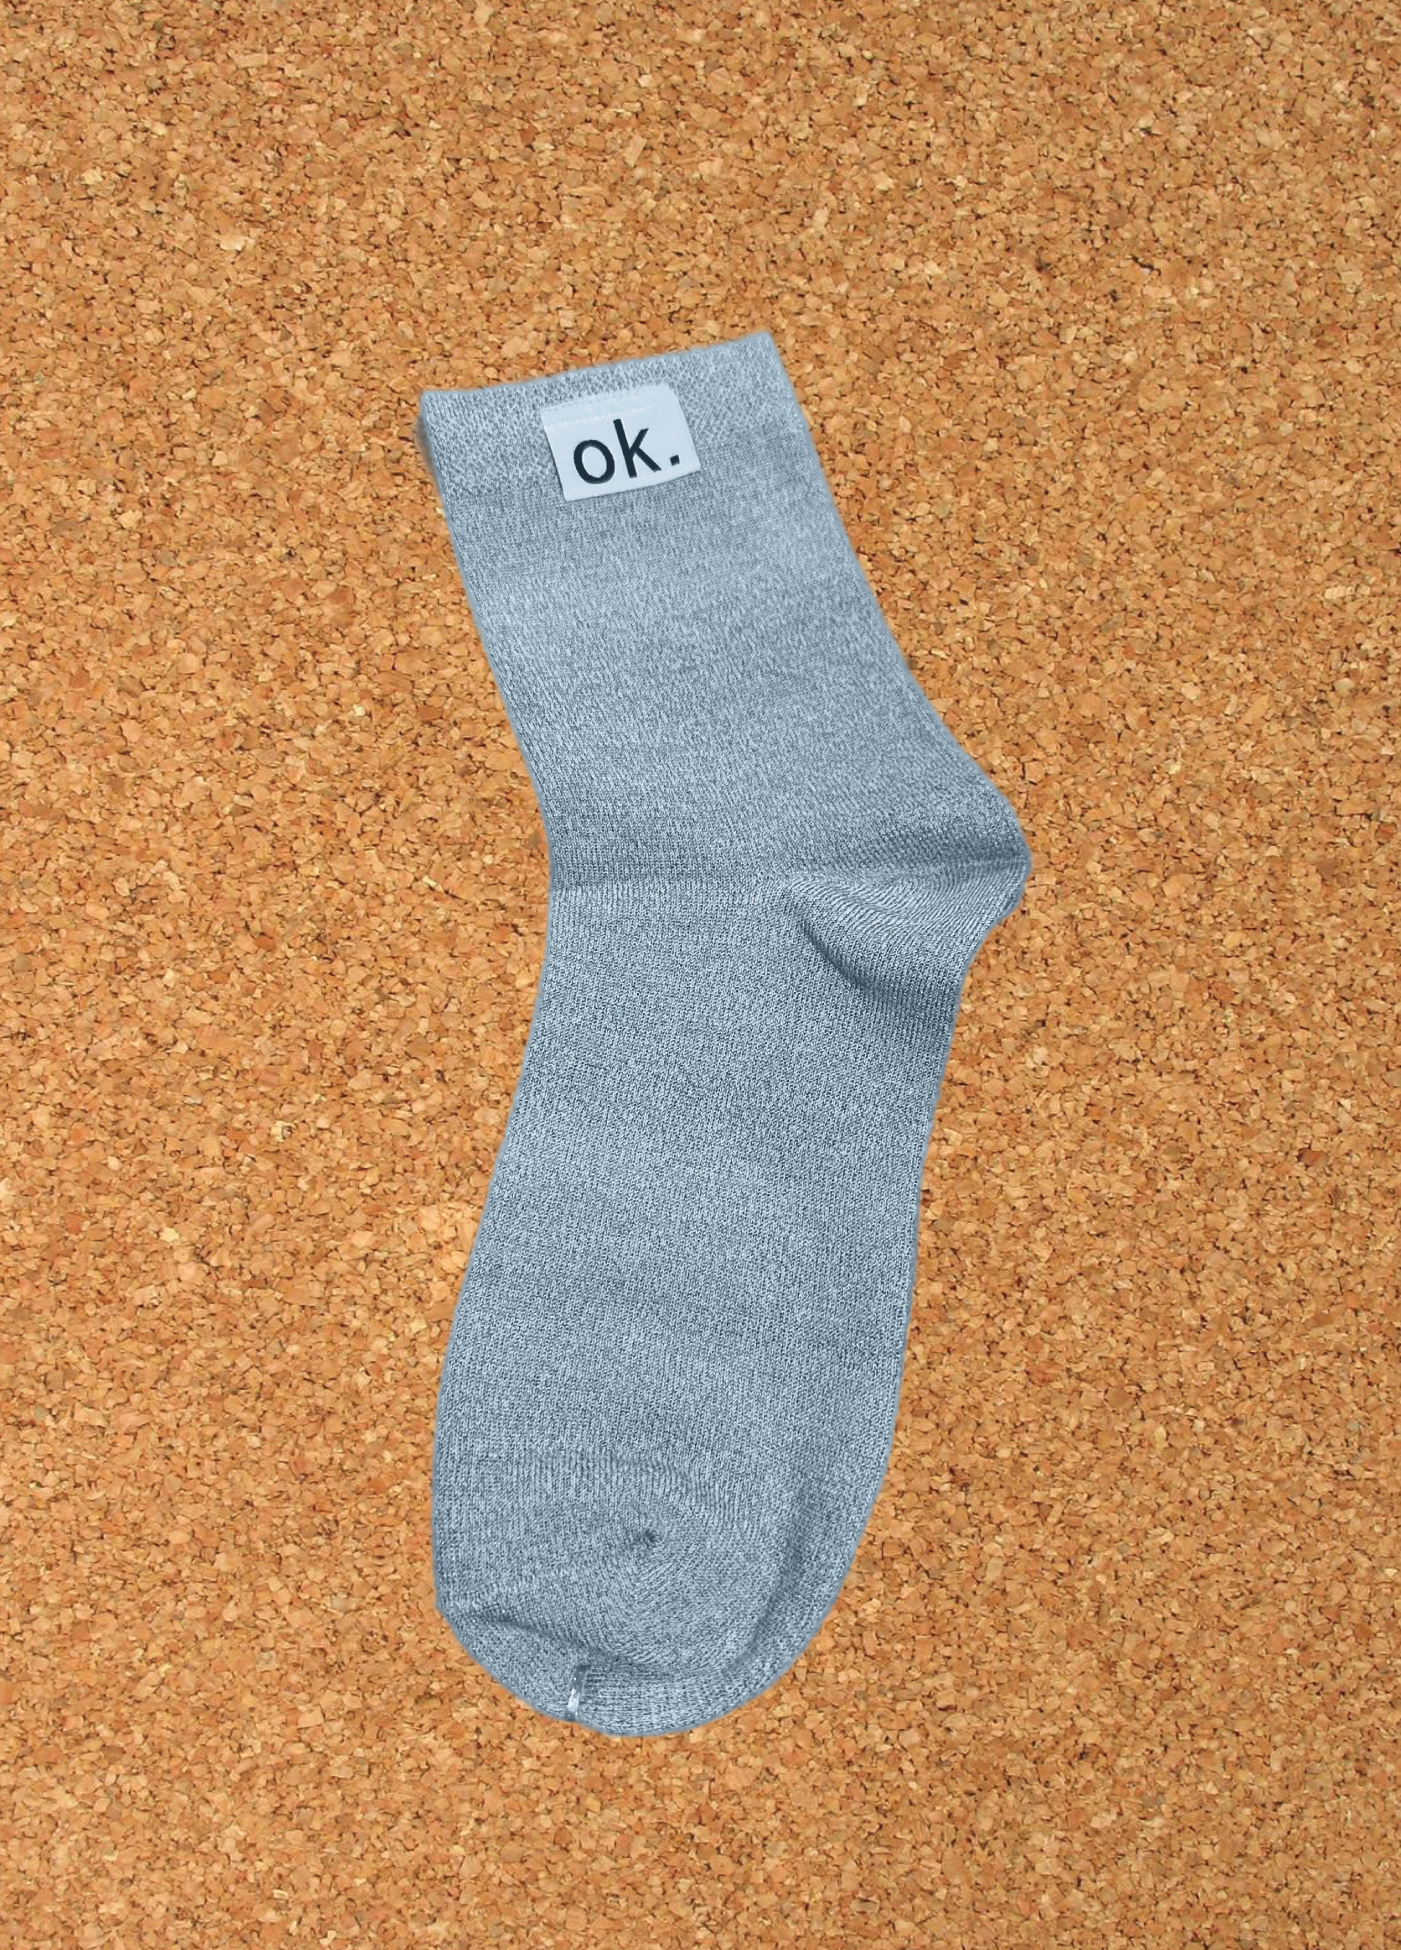 ok. Grounding Socks